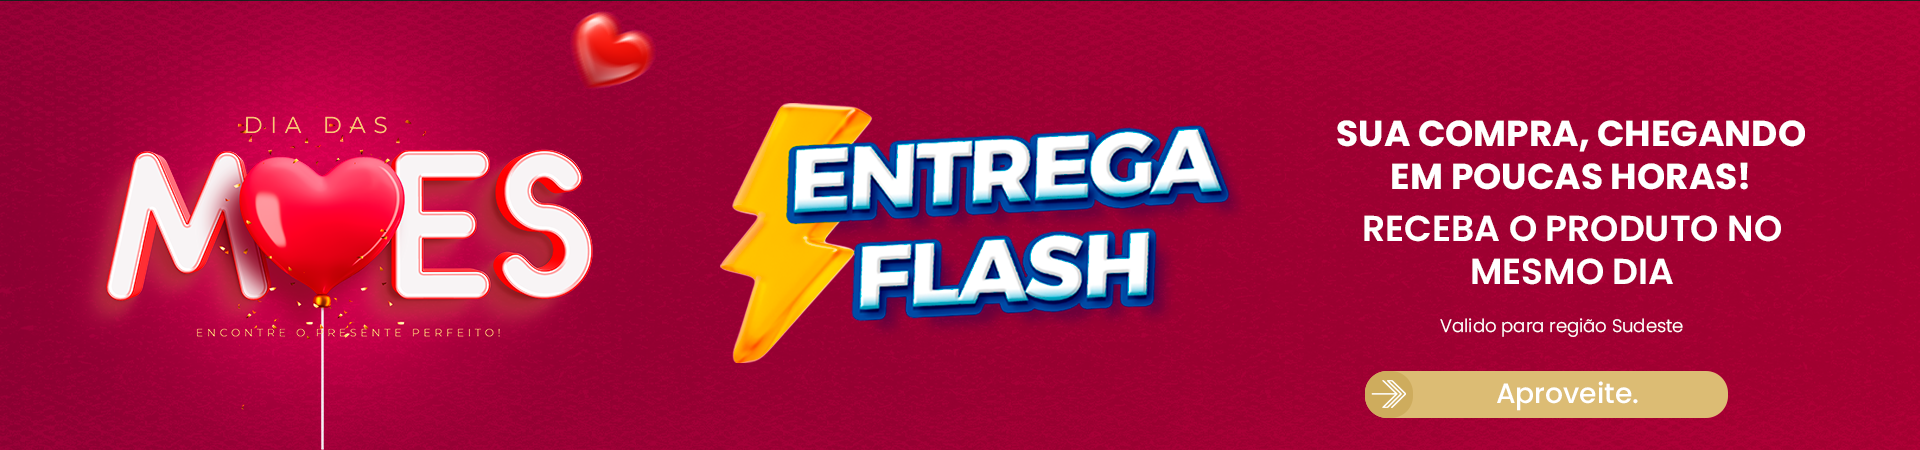 Banner Desk - Entrega Flash